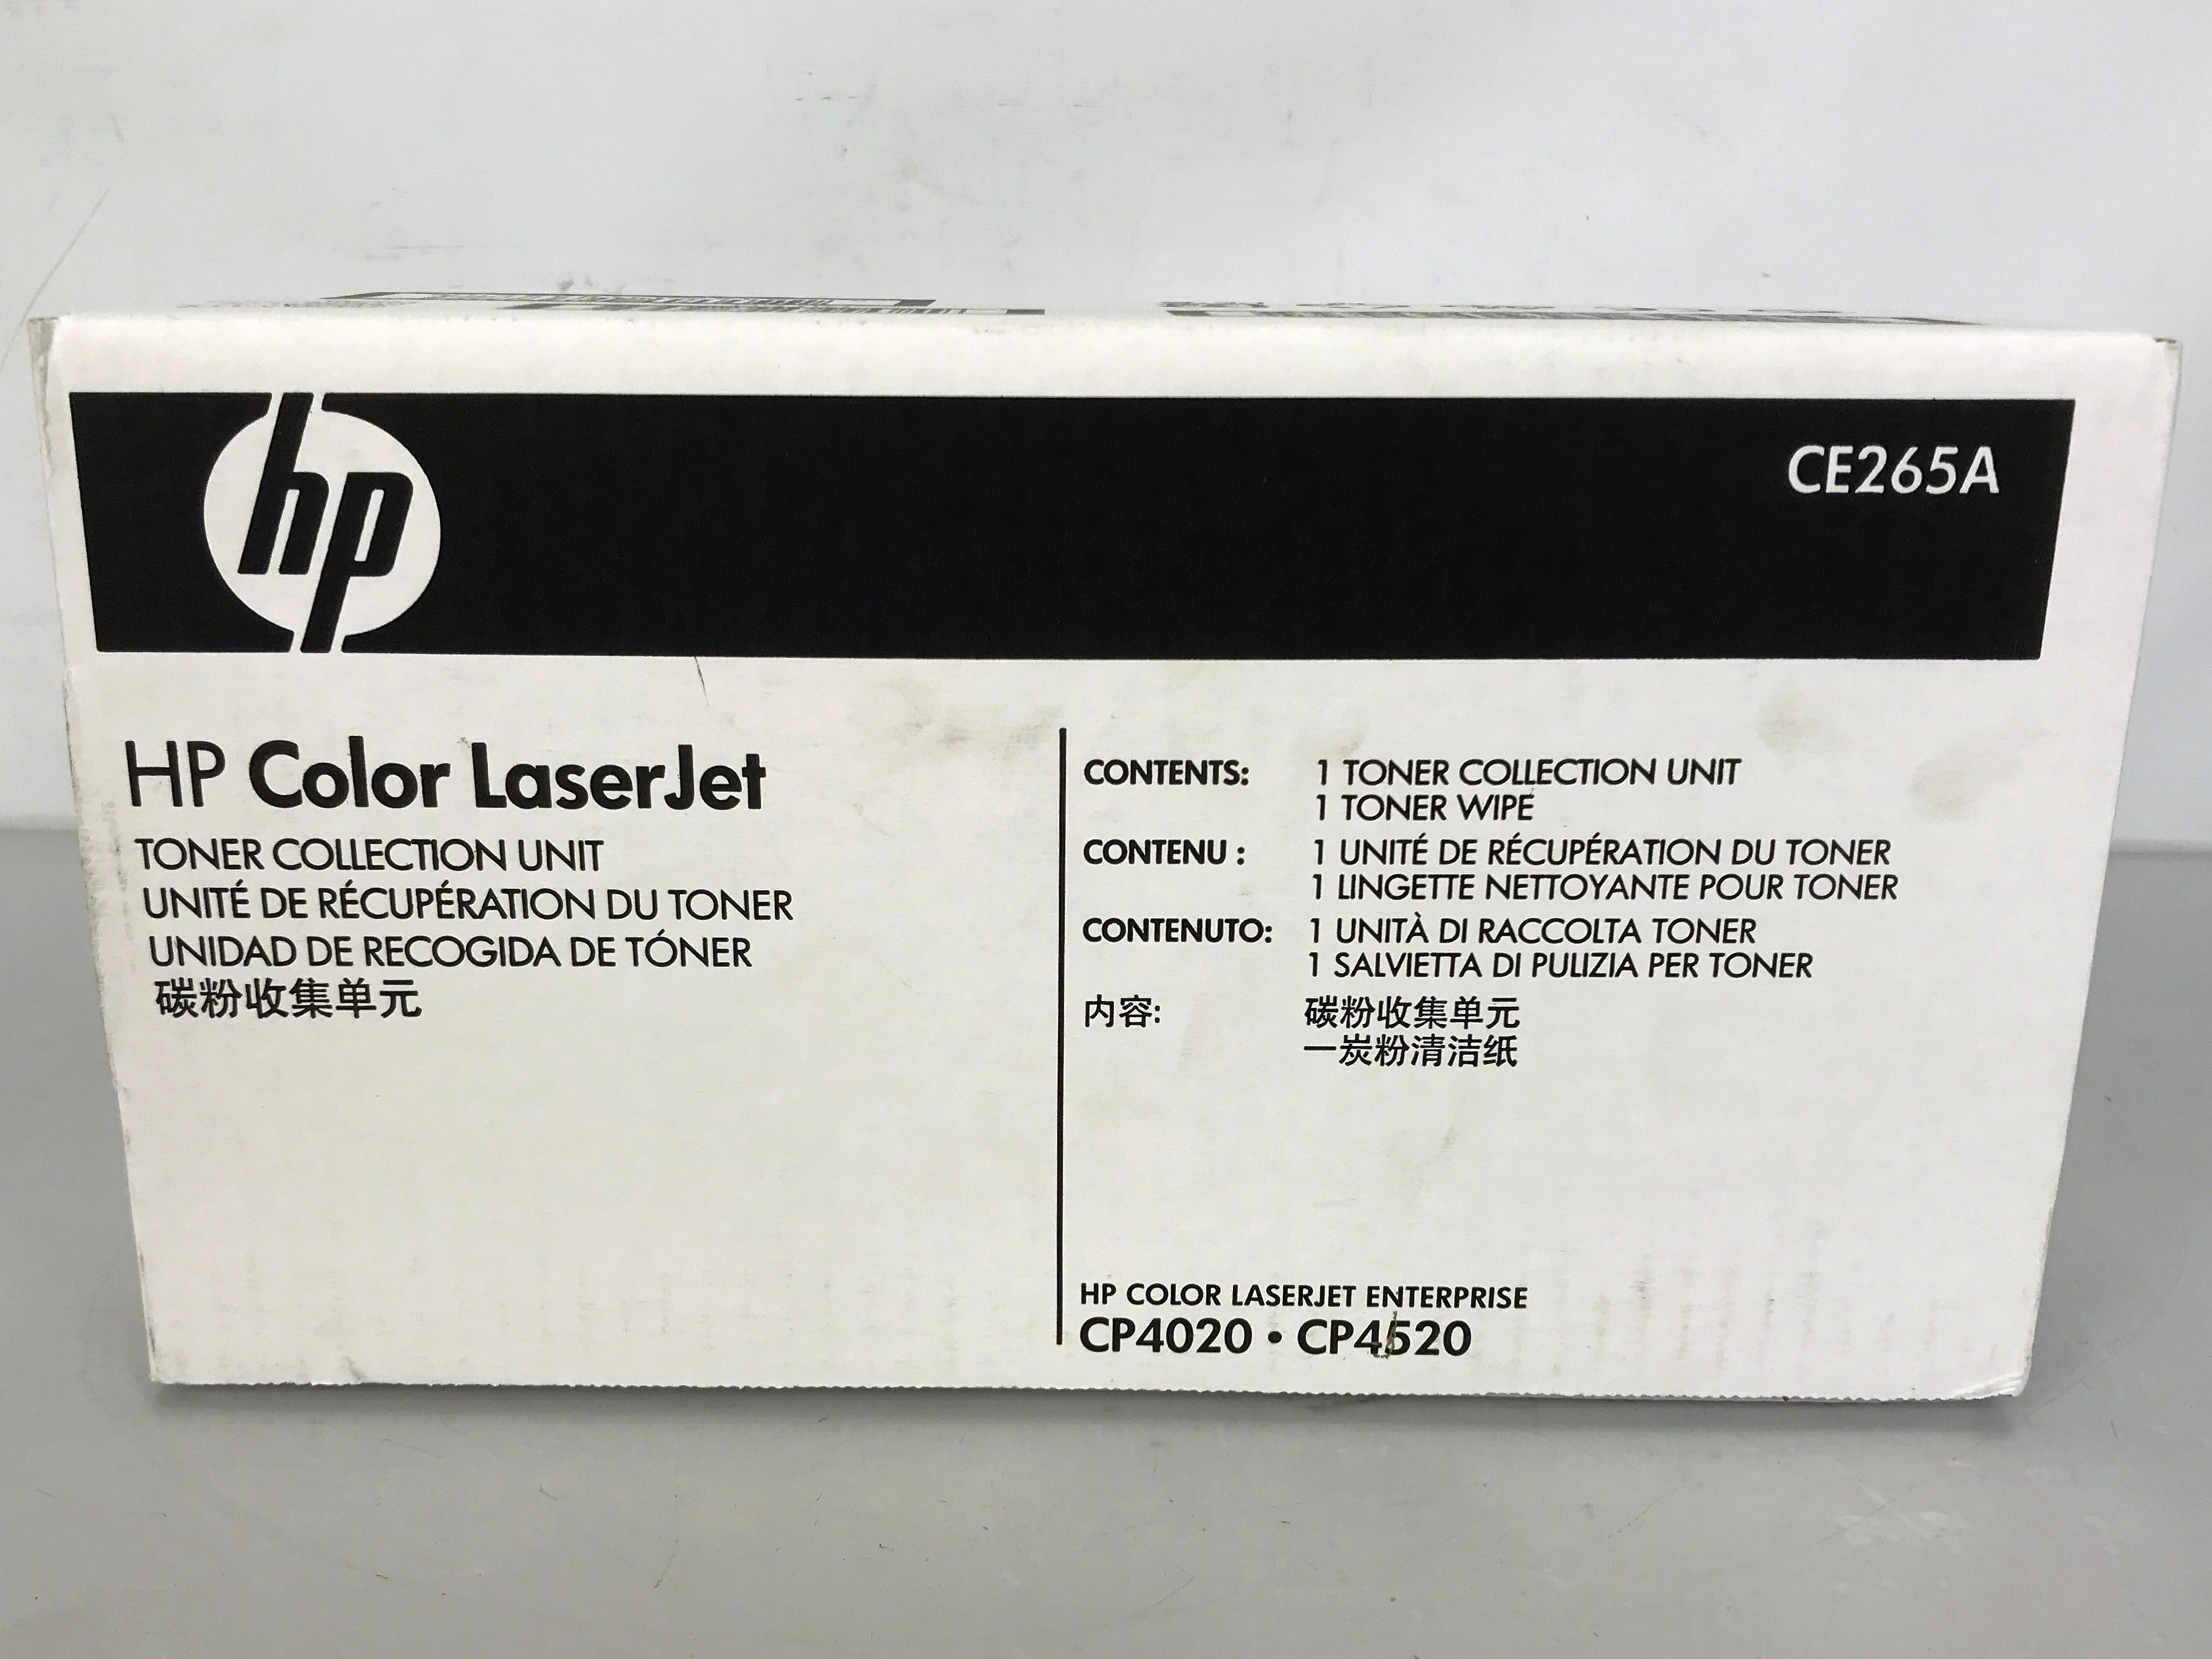 HP Color LaserJet CE265A Toner Collection Unit